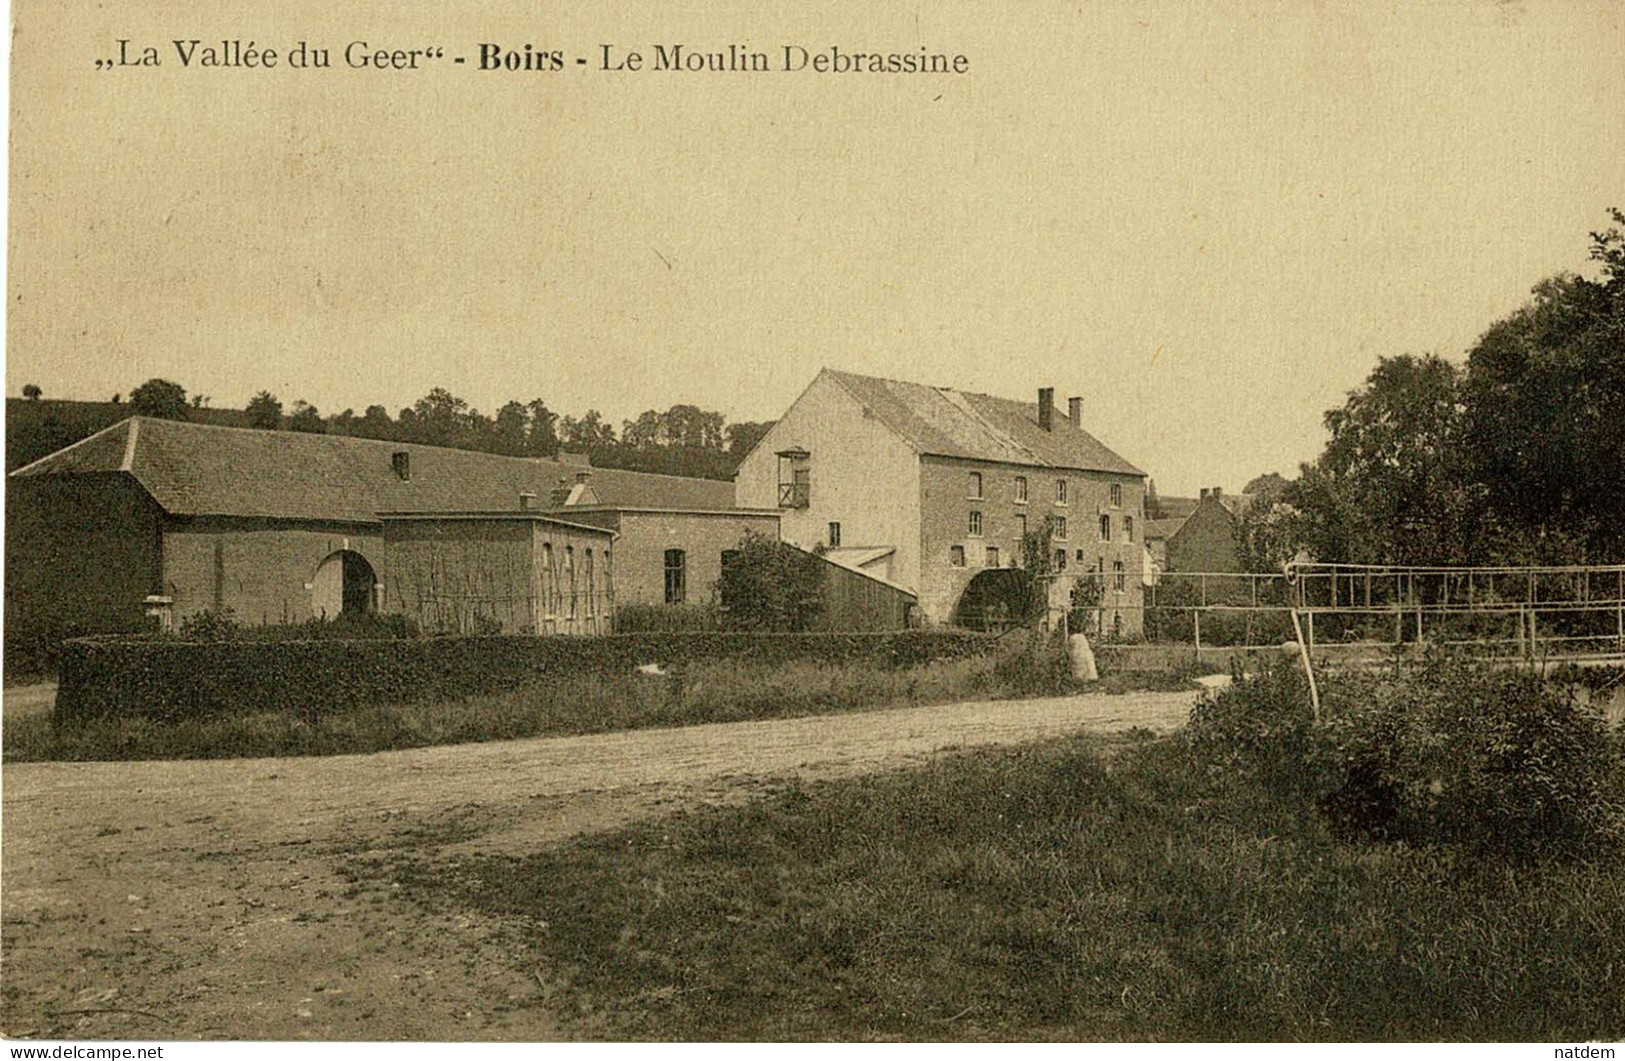 La Vallée Du Geer, BOIRS, Le Moulin Debrassine - Bassenge